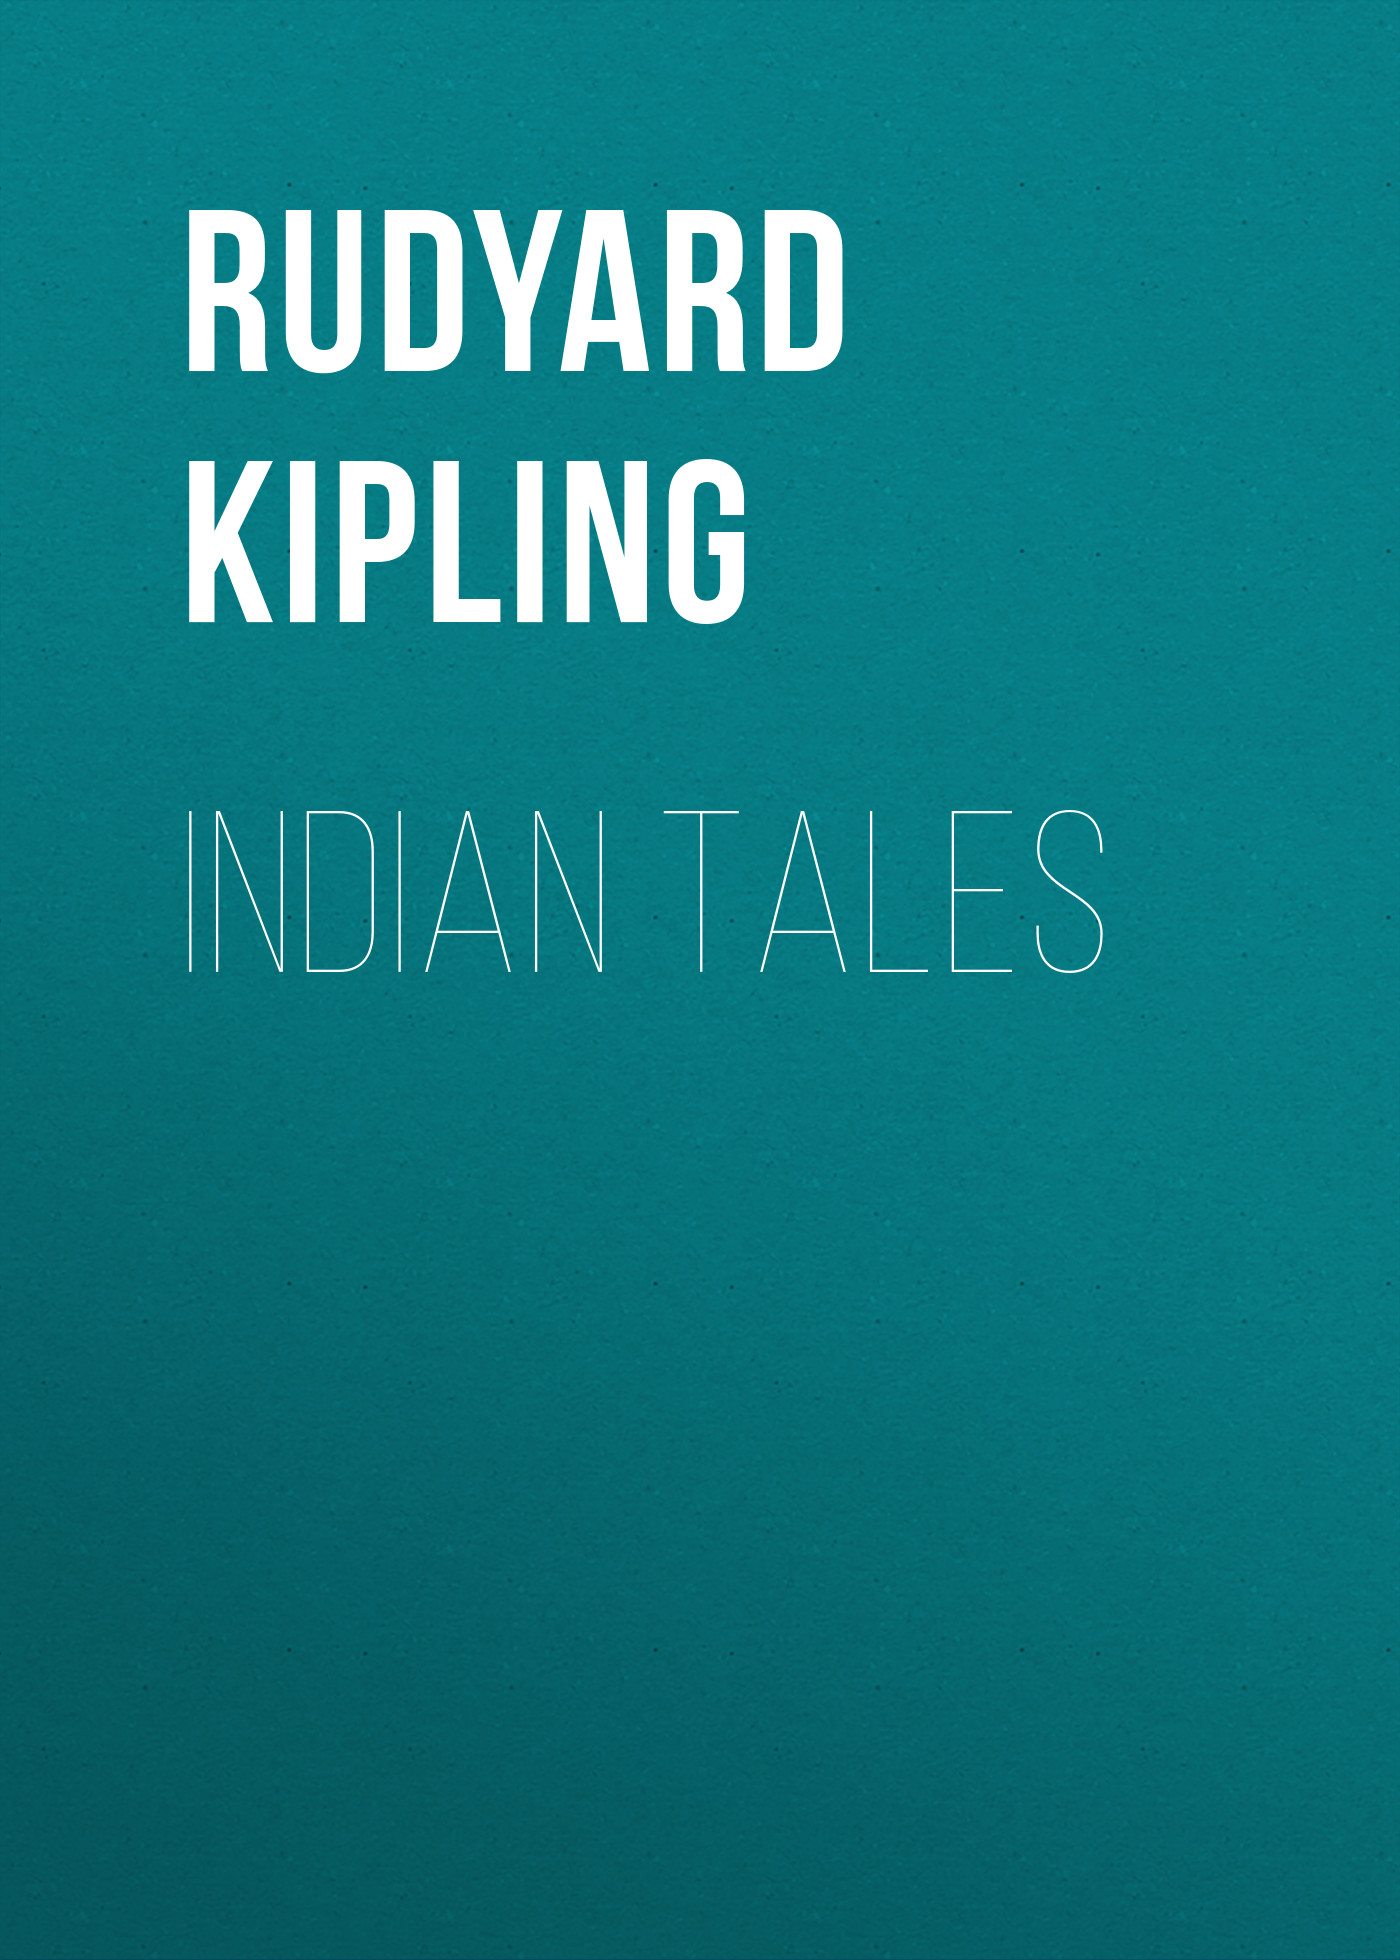 Книга Indian Tales из серии , созданная Rudyard Kipling, может относится к жанру Литература 19 века, Классическая проза, Зарубежная старинная литература, Зарубежная классика. Стоимость электронной книги Indian Tales с идентификатором 25229700 составляет 0 руб.